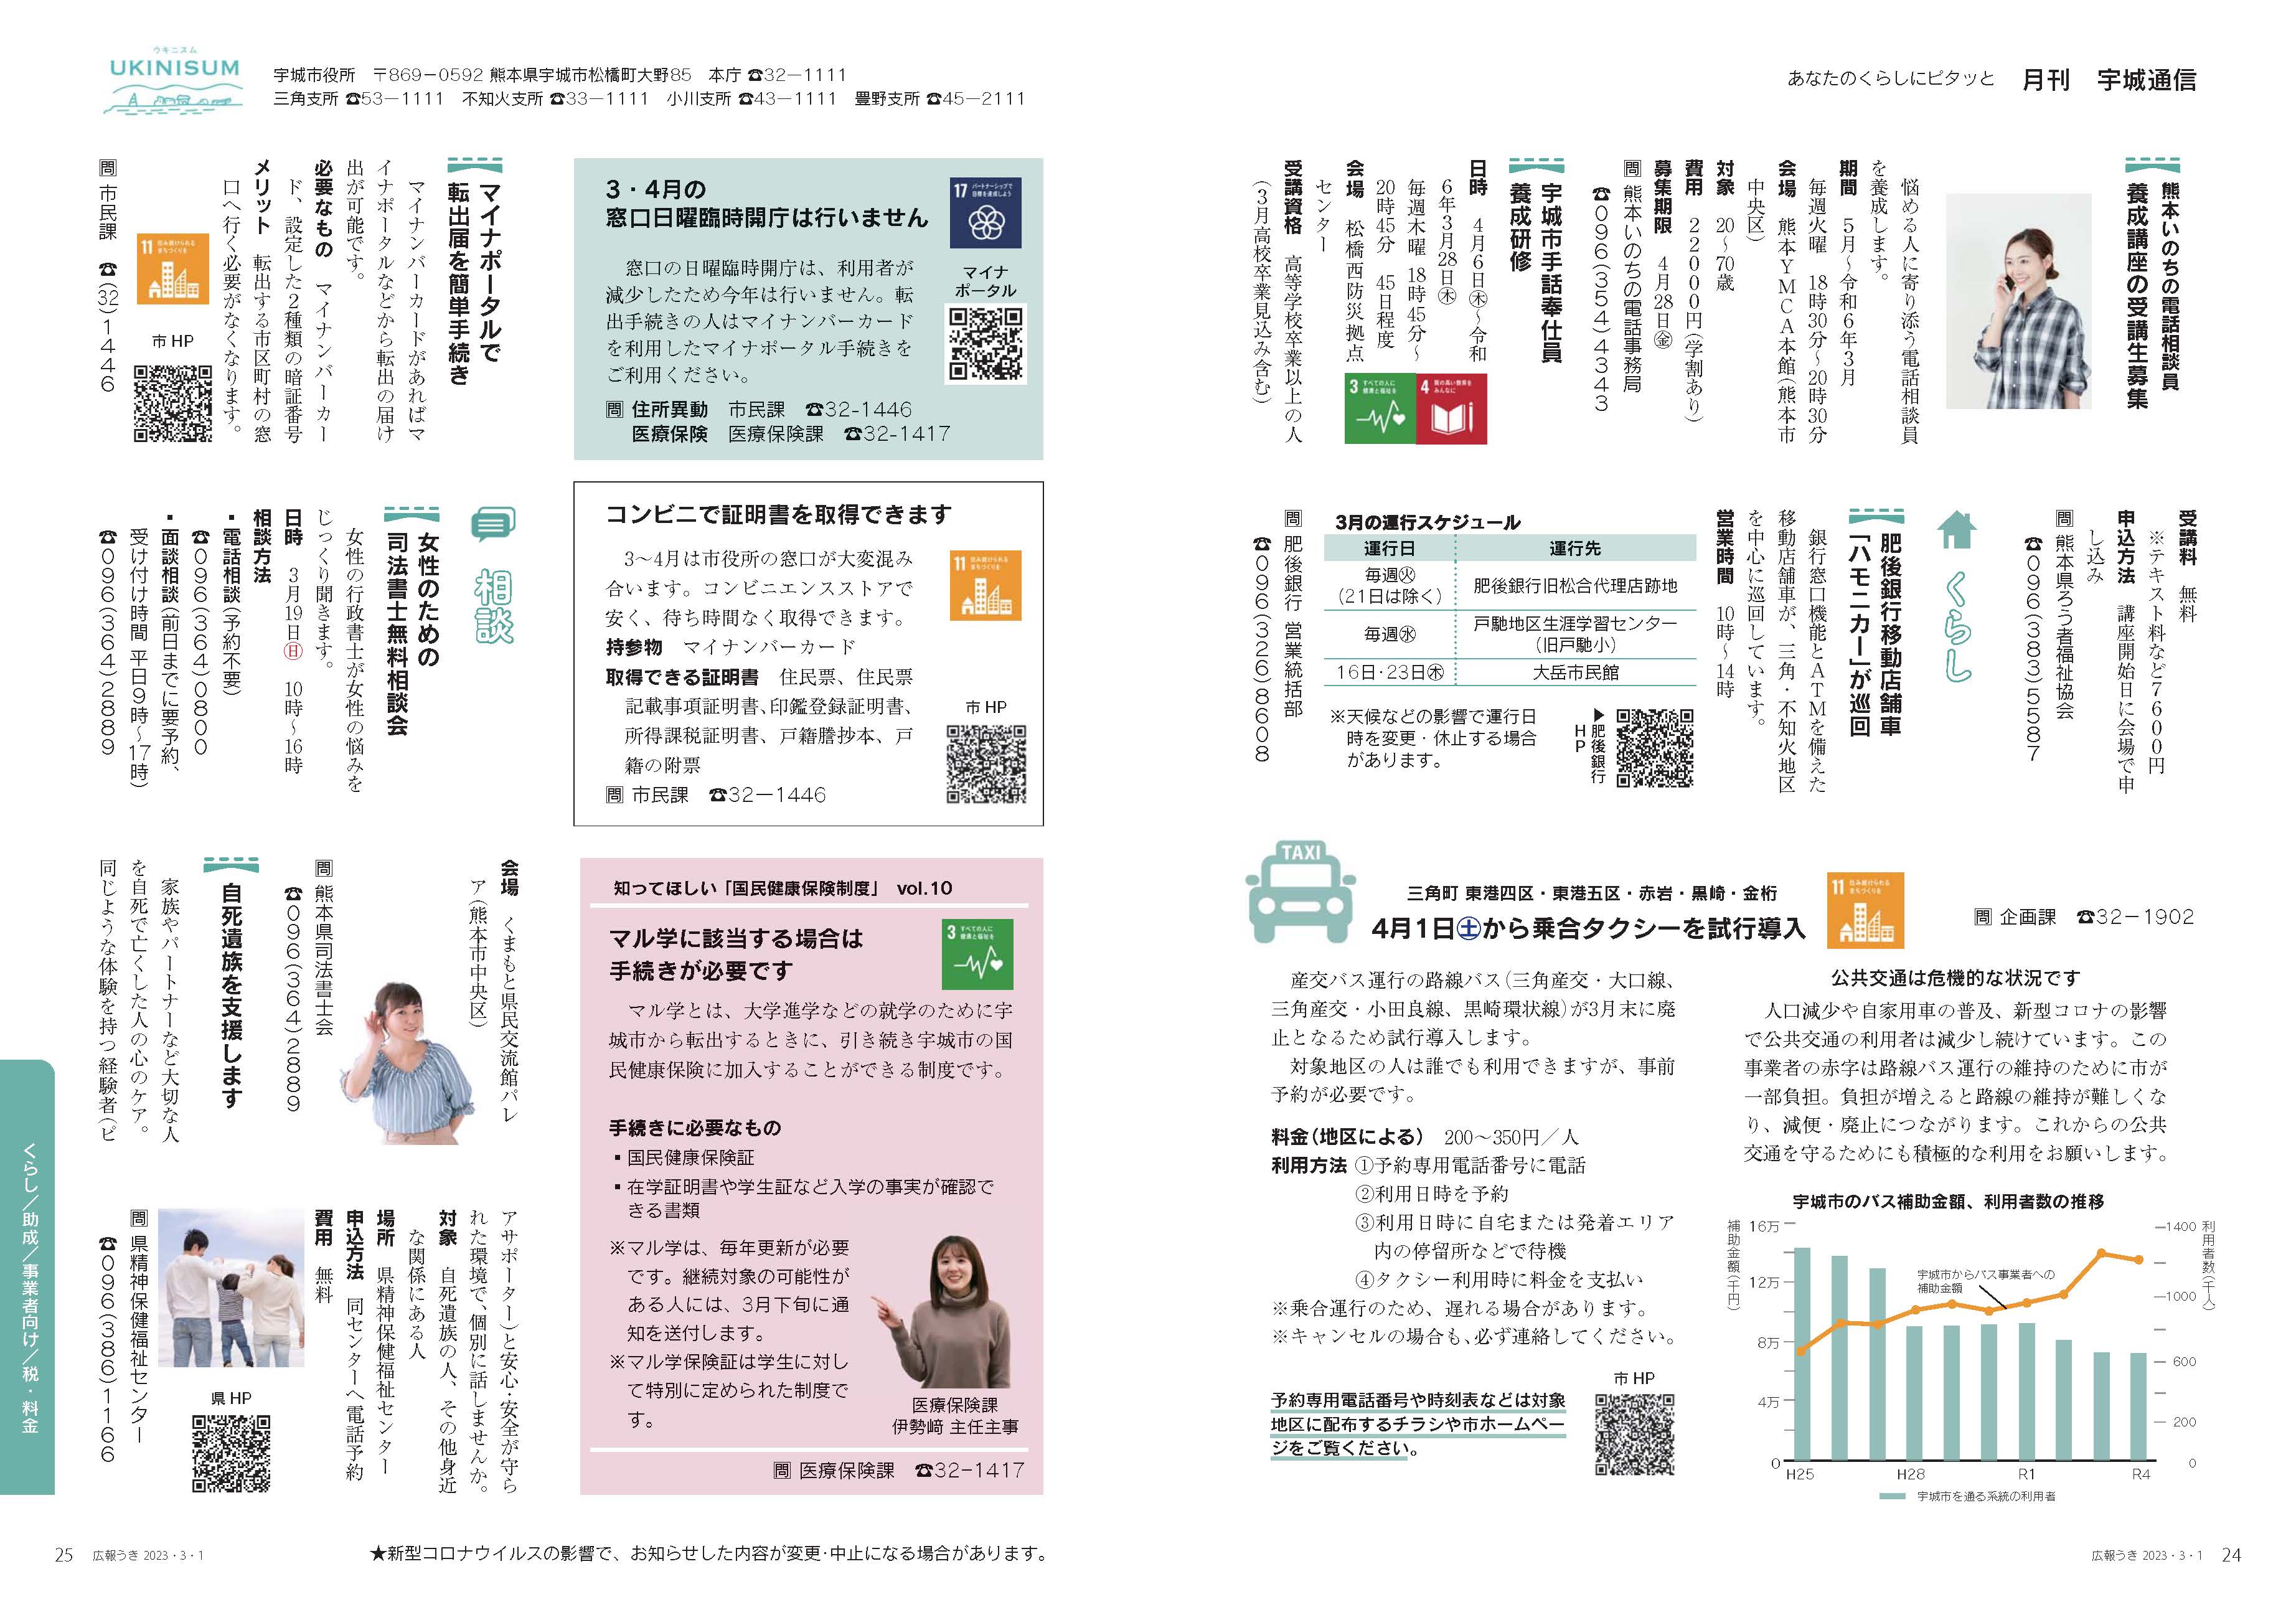 P24、P25 月刊 宇城通信のページ画像、詳細はPDFリンクを参照ください。